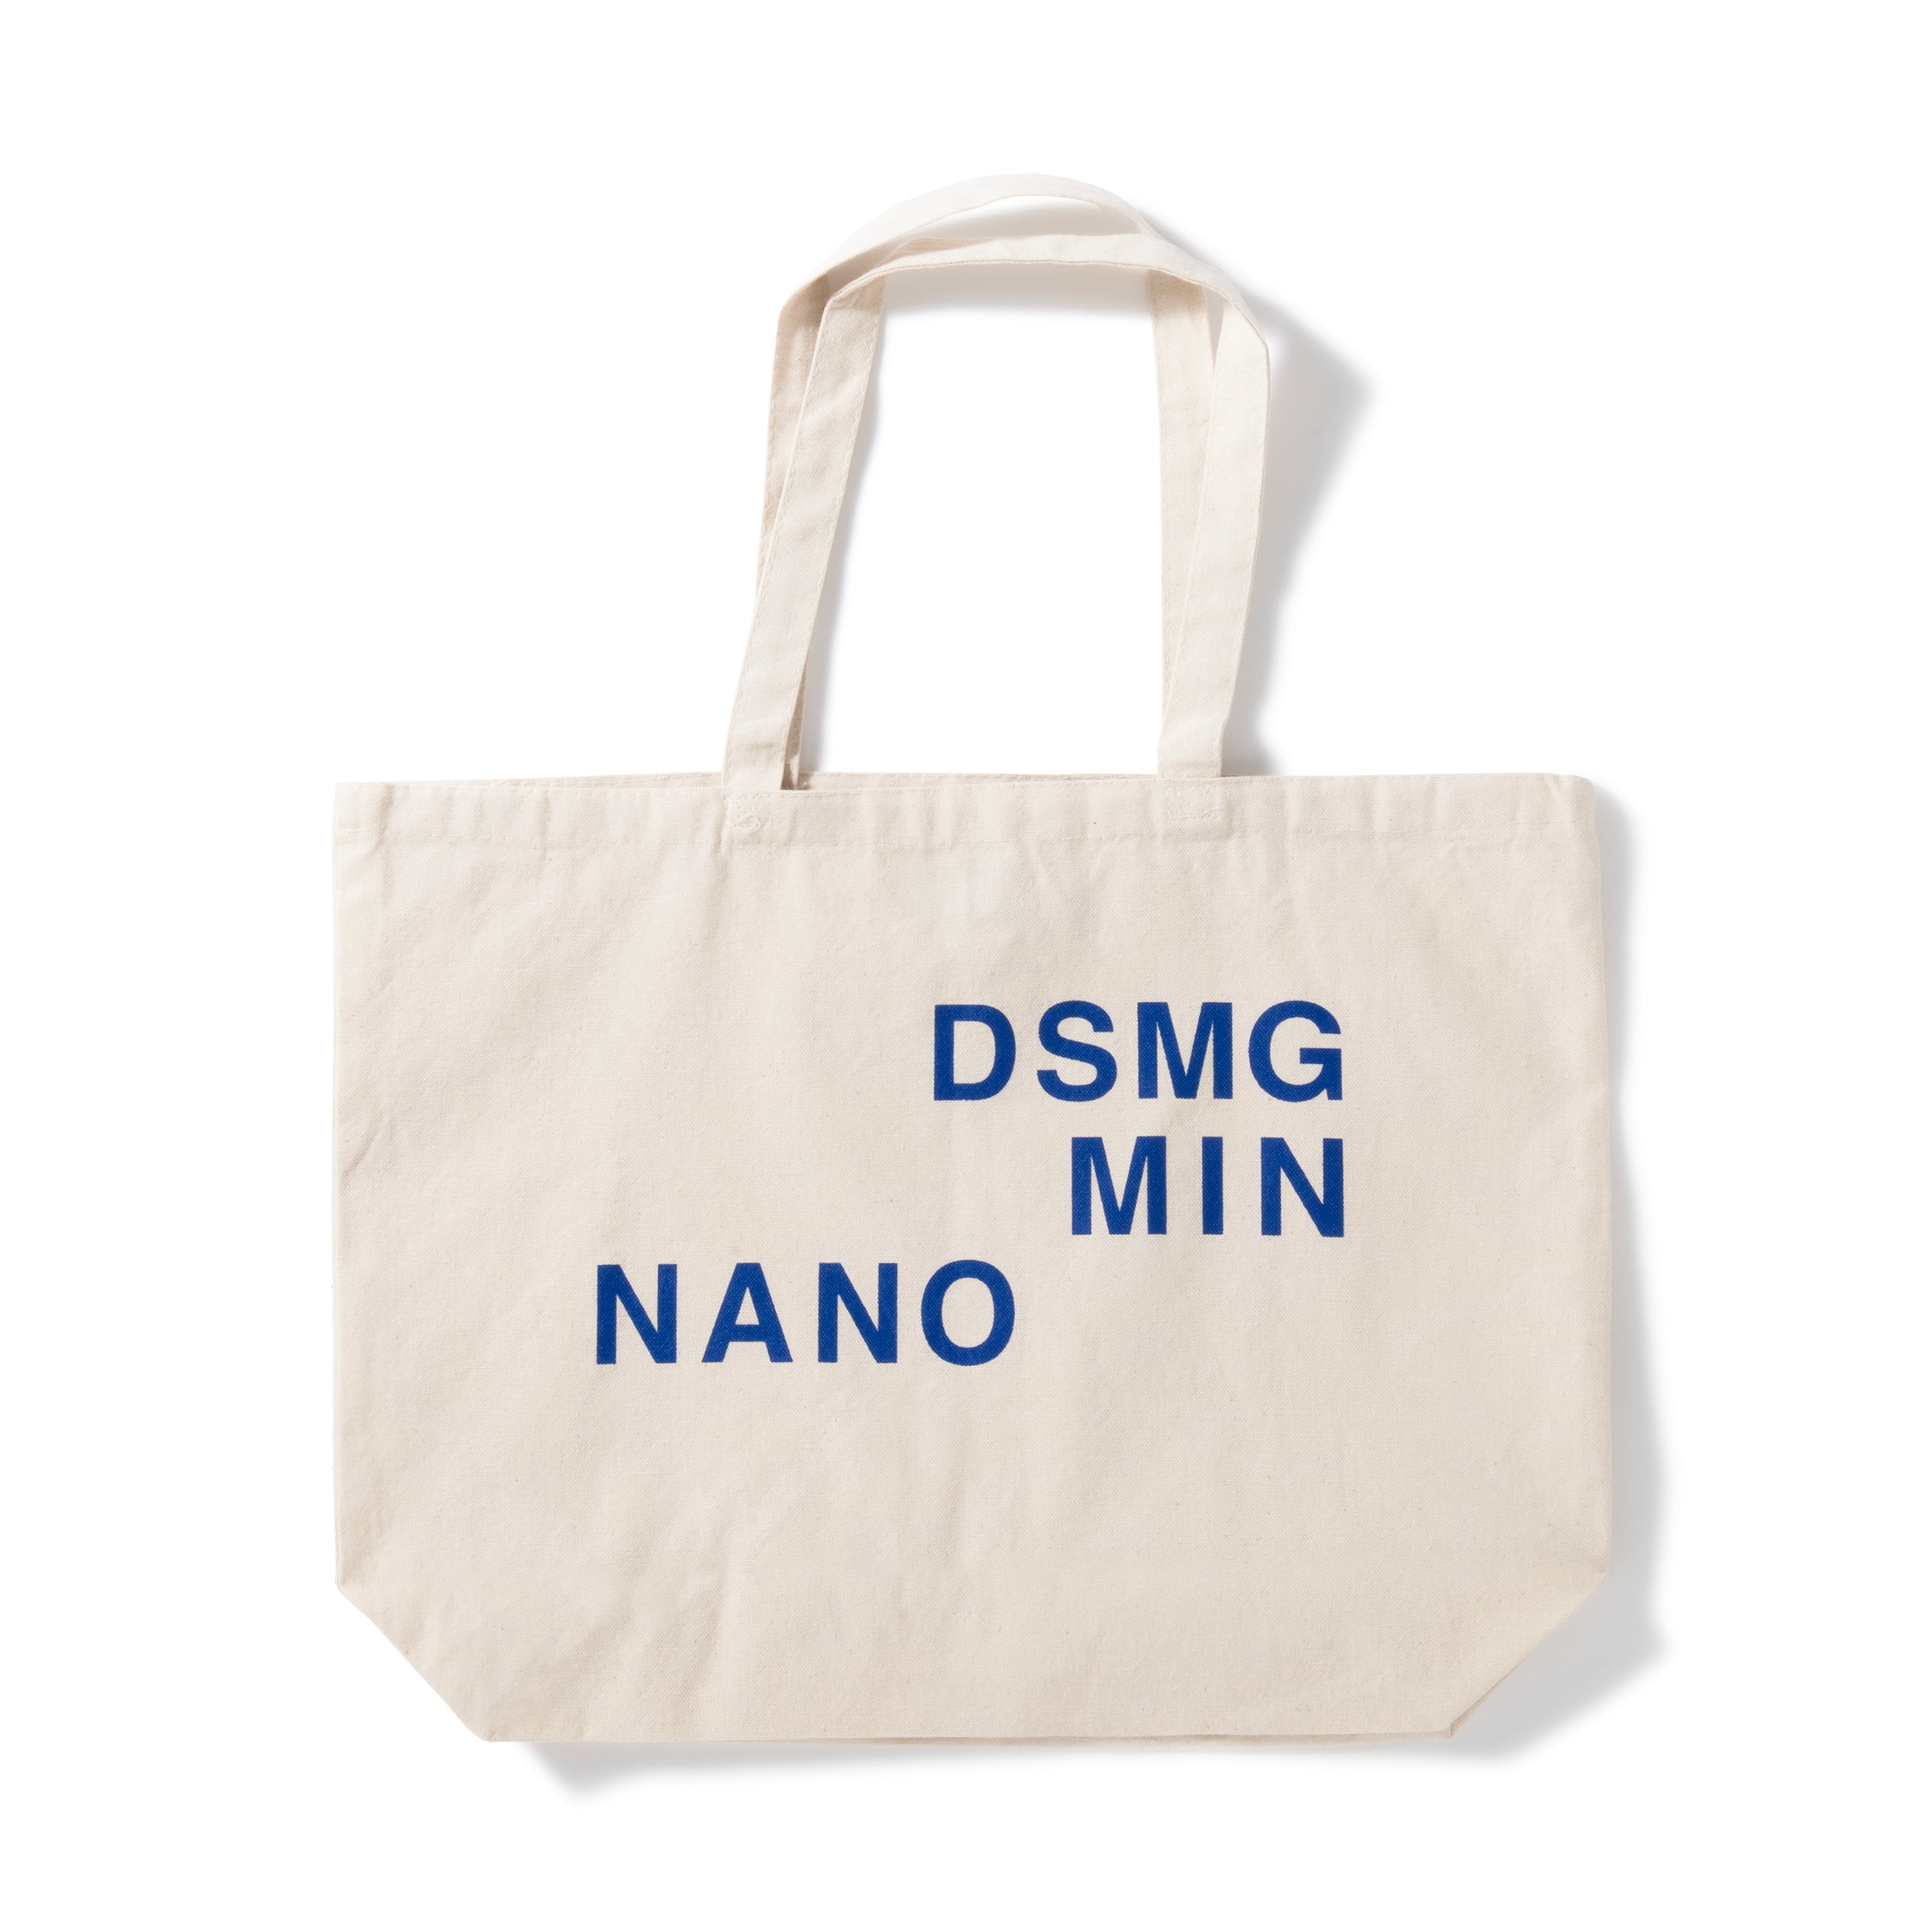 MIN-NANO - Work Book Tote Bag - (White) – DSMG E-SHOP